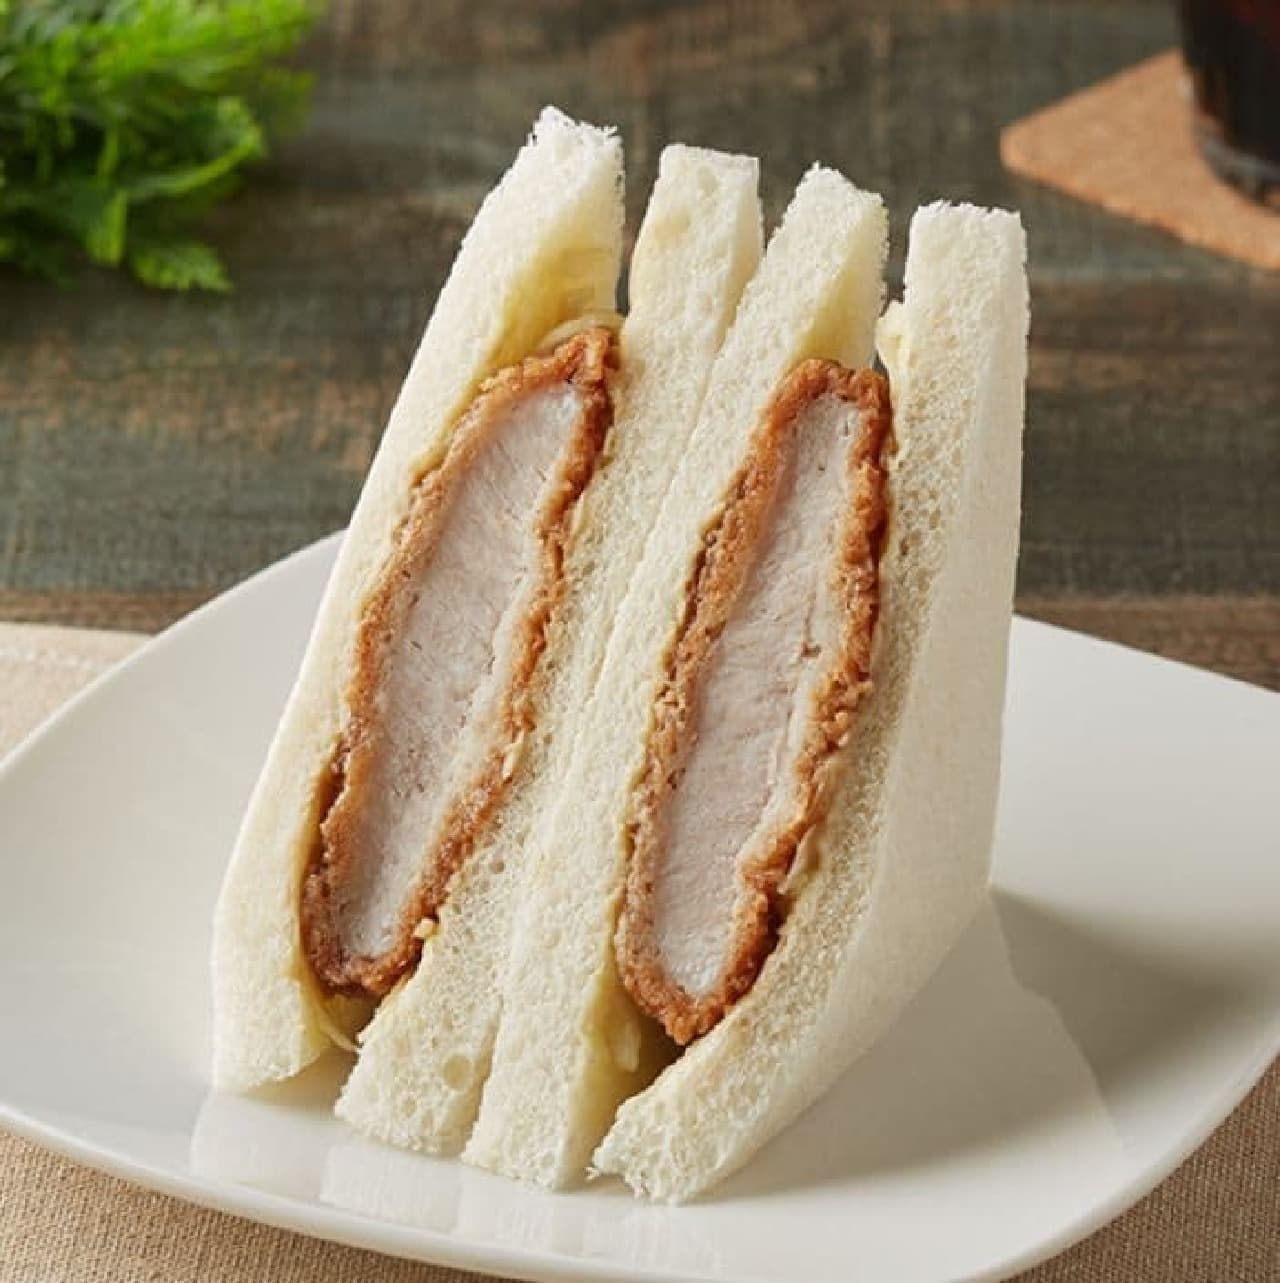 FamilyMart "Thick Cut Loin Cutlet Sandwich